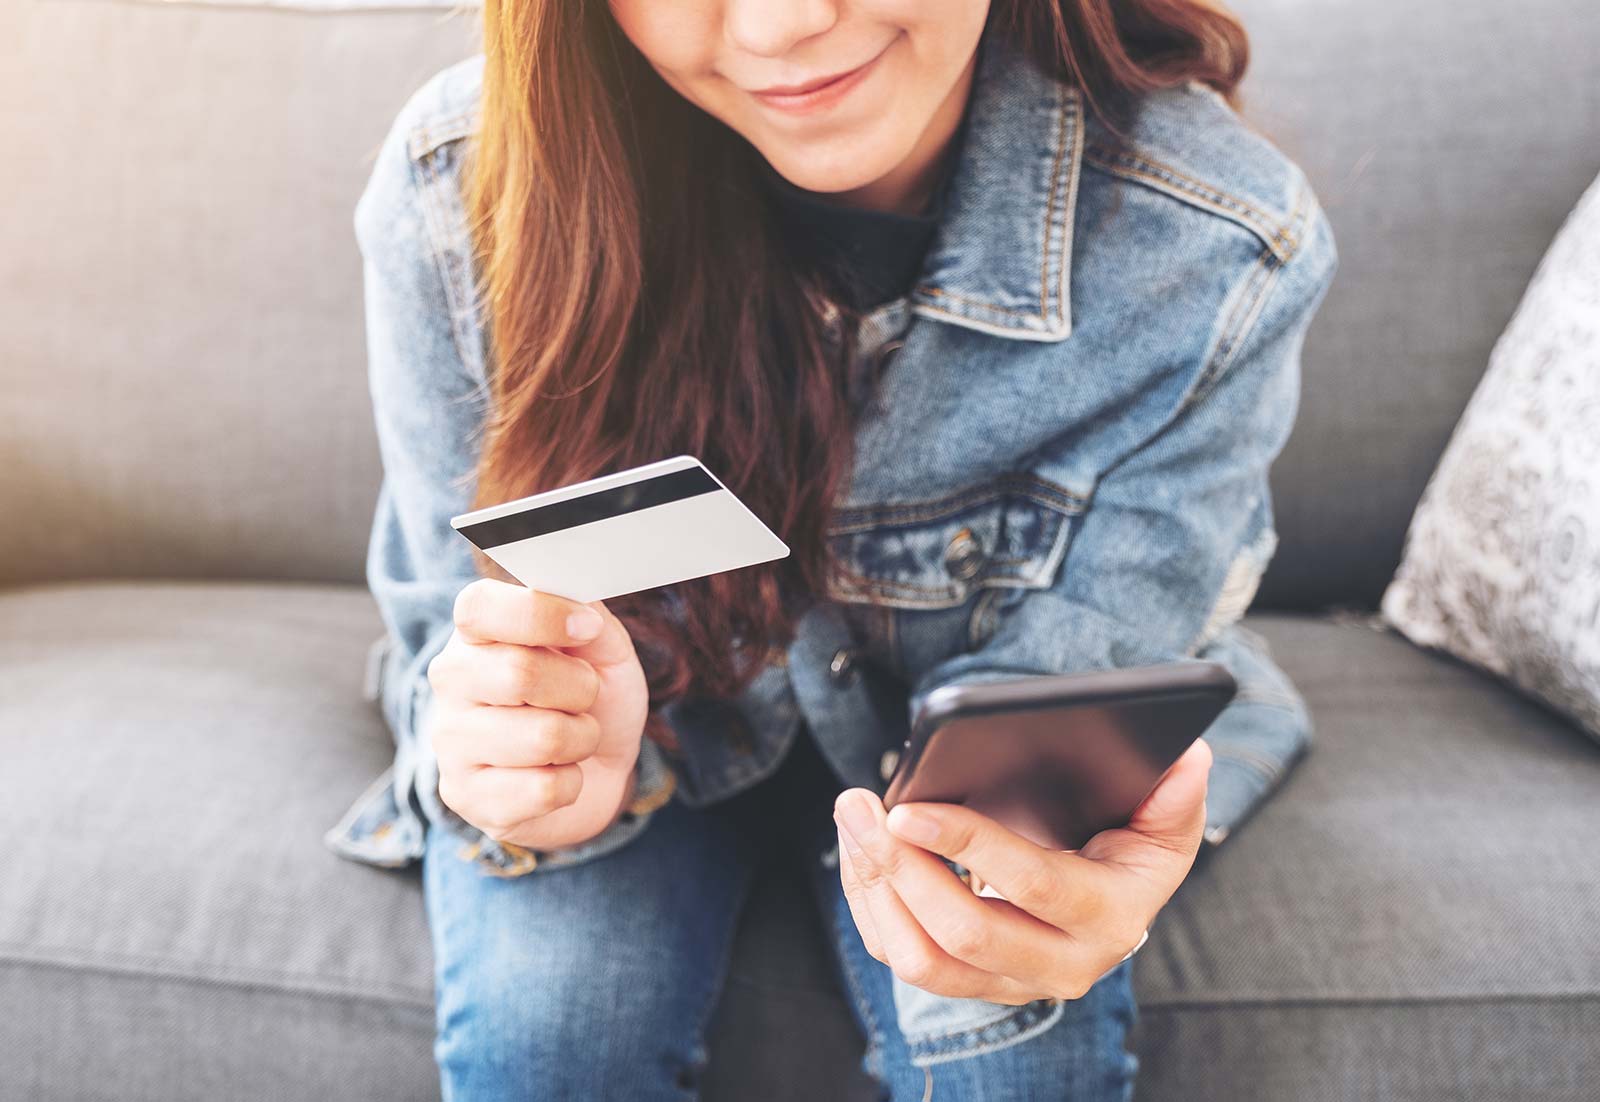 Eine junge Frau sitzt auf dem Sofa, in der einen Hand ein Smartphone, in der anderen Hand eine Bankkarte